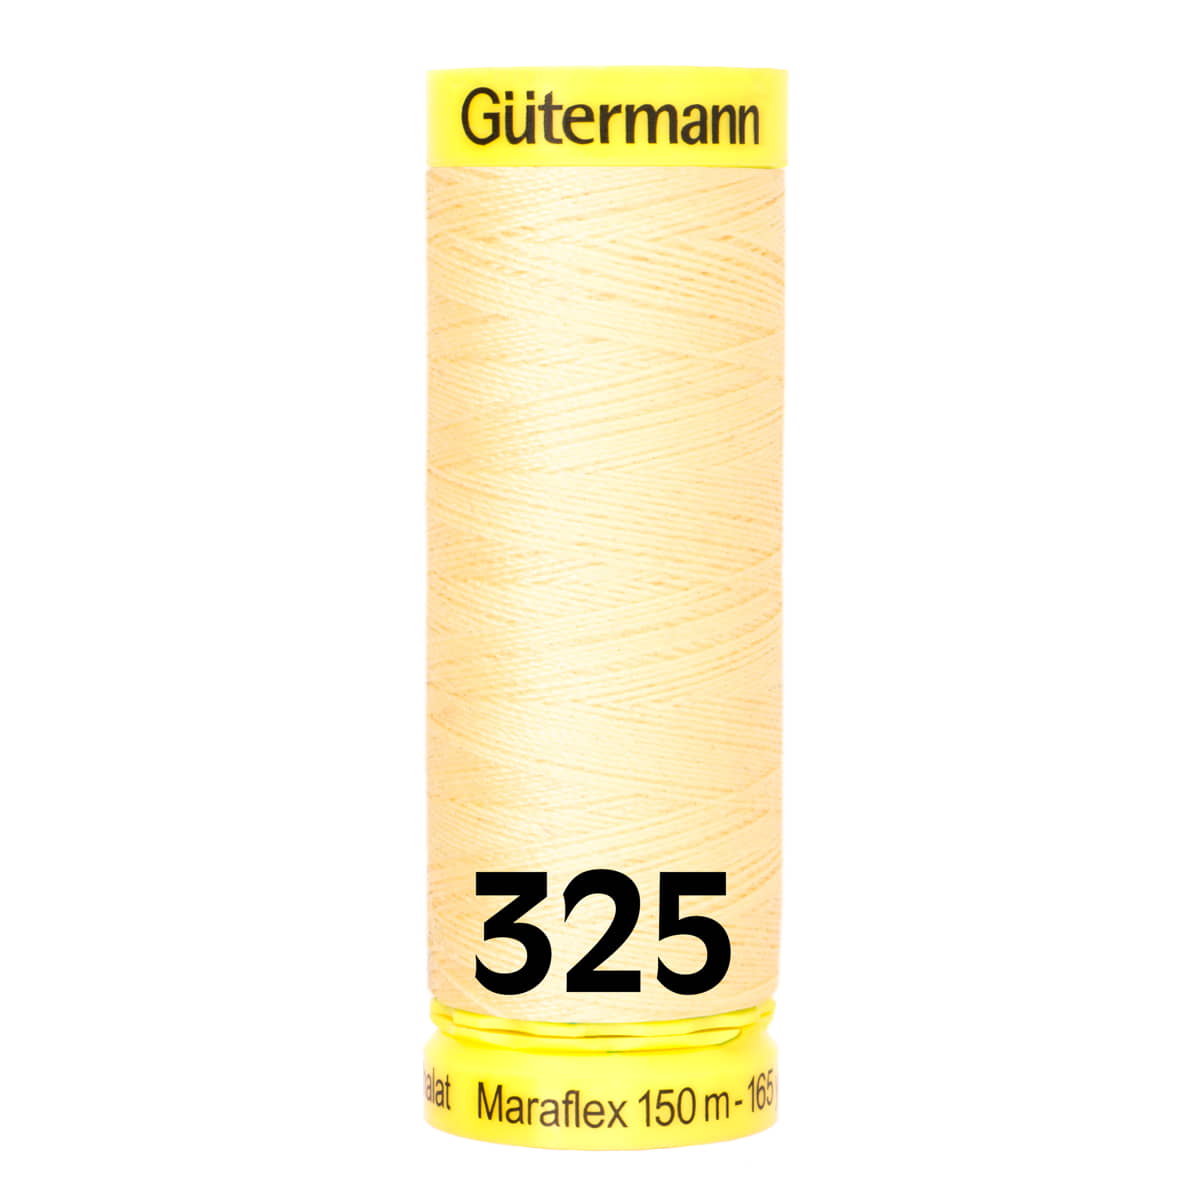 Gütermann MaraFlex 150m - 325 licht geel GUTERMANN-MARAFLEX-150-325 4029394998881 - Fourniturenkraam.nl